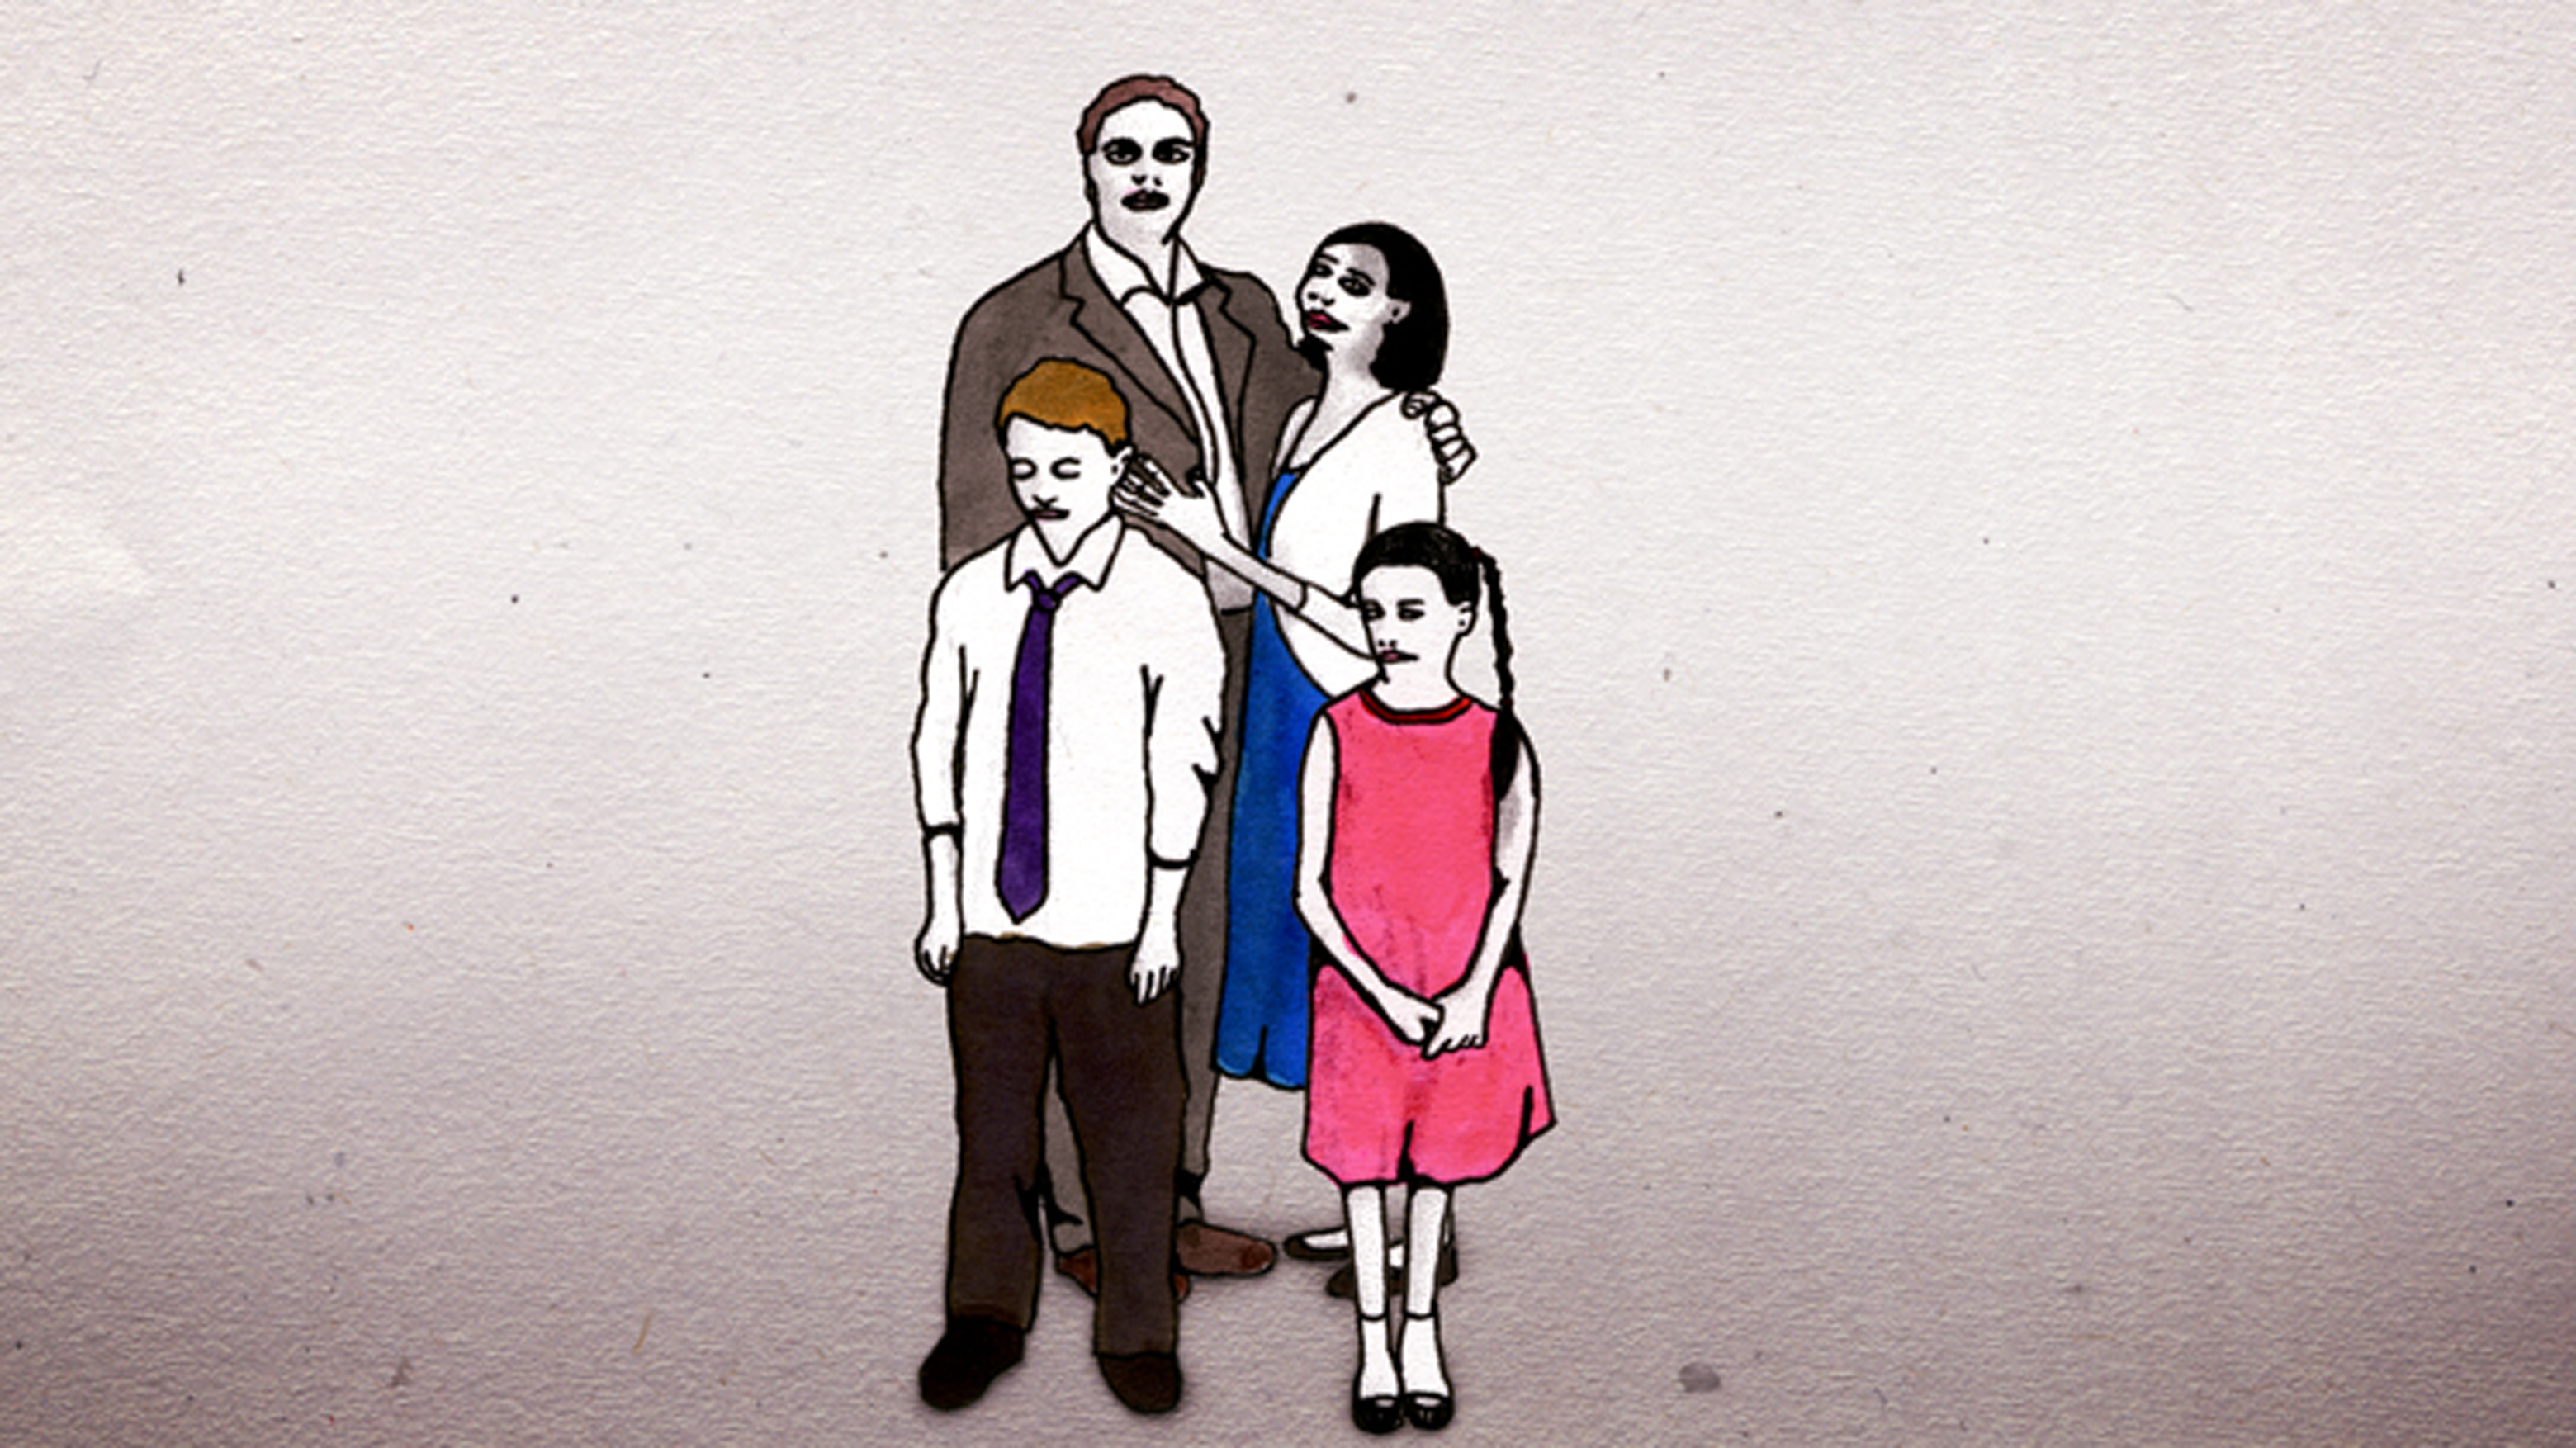 Kadr z filmu "Family portrait"